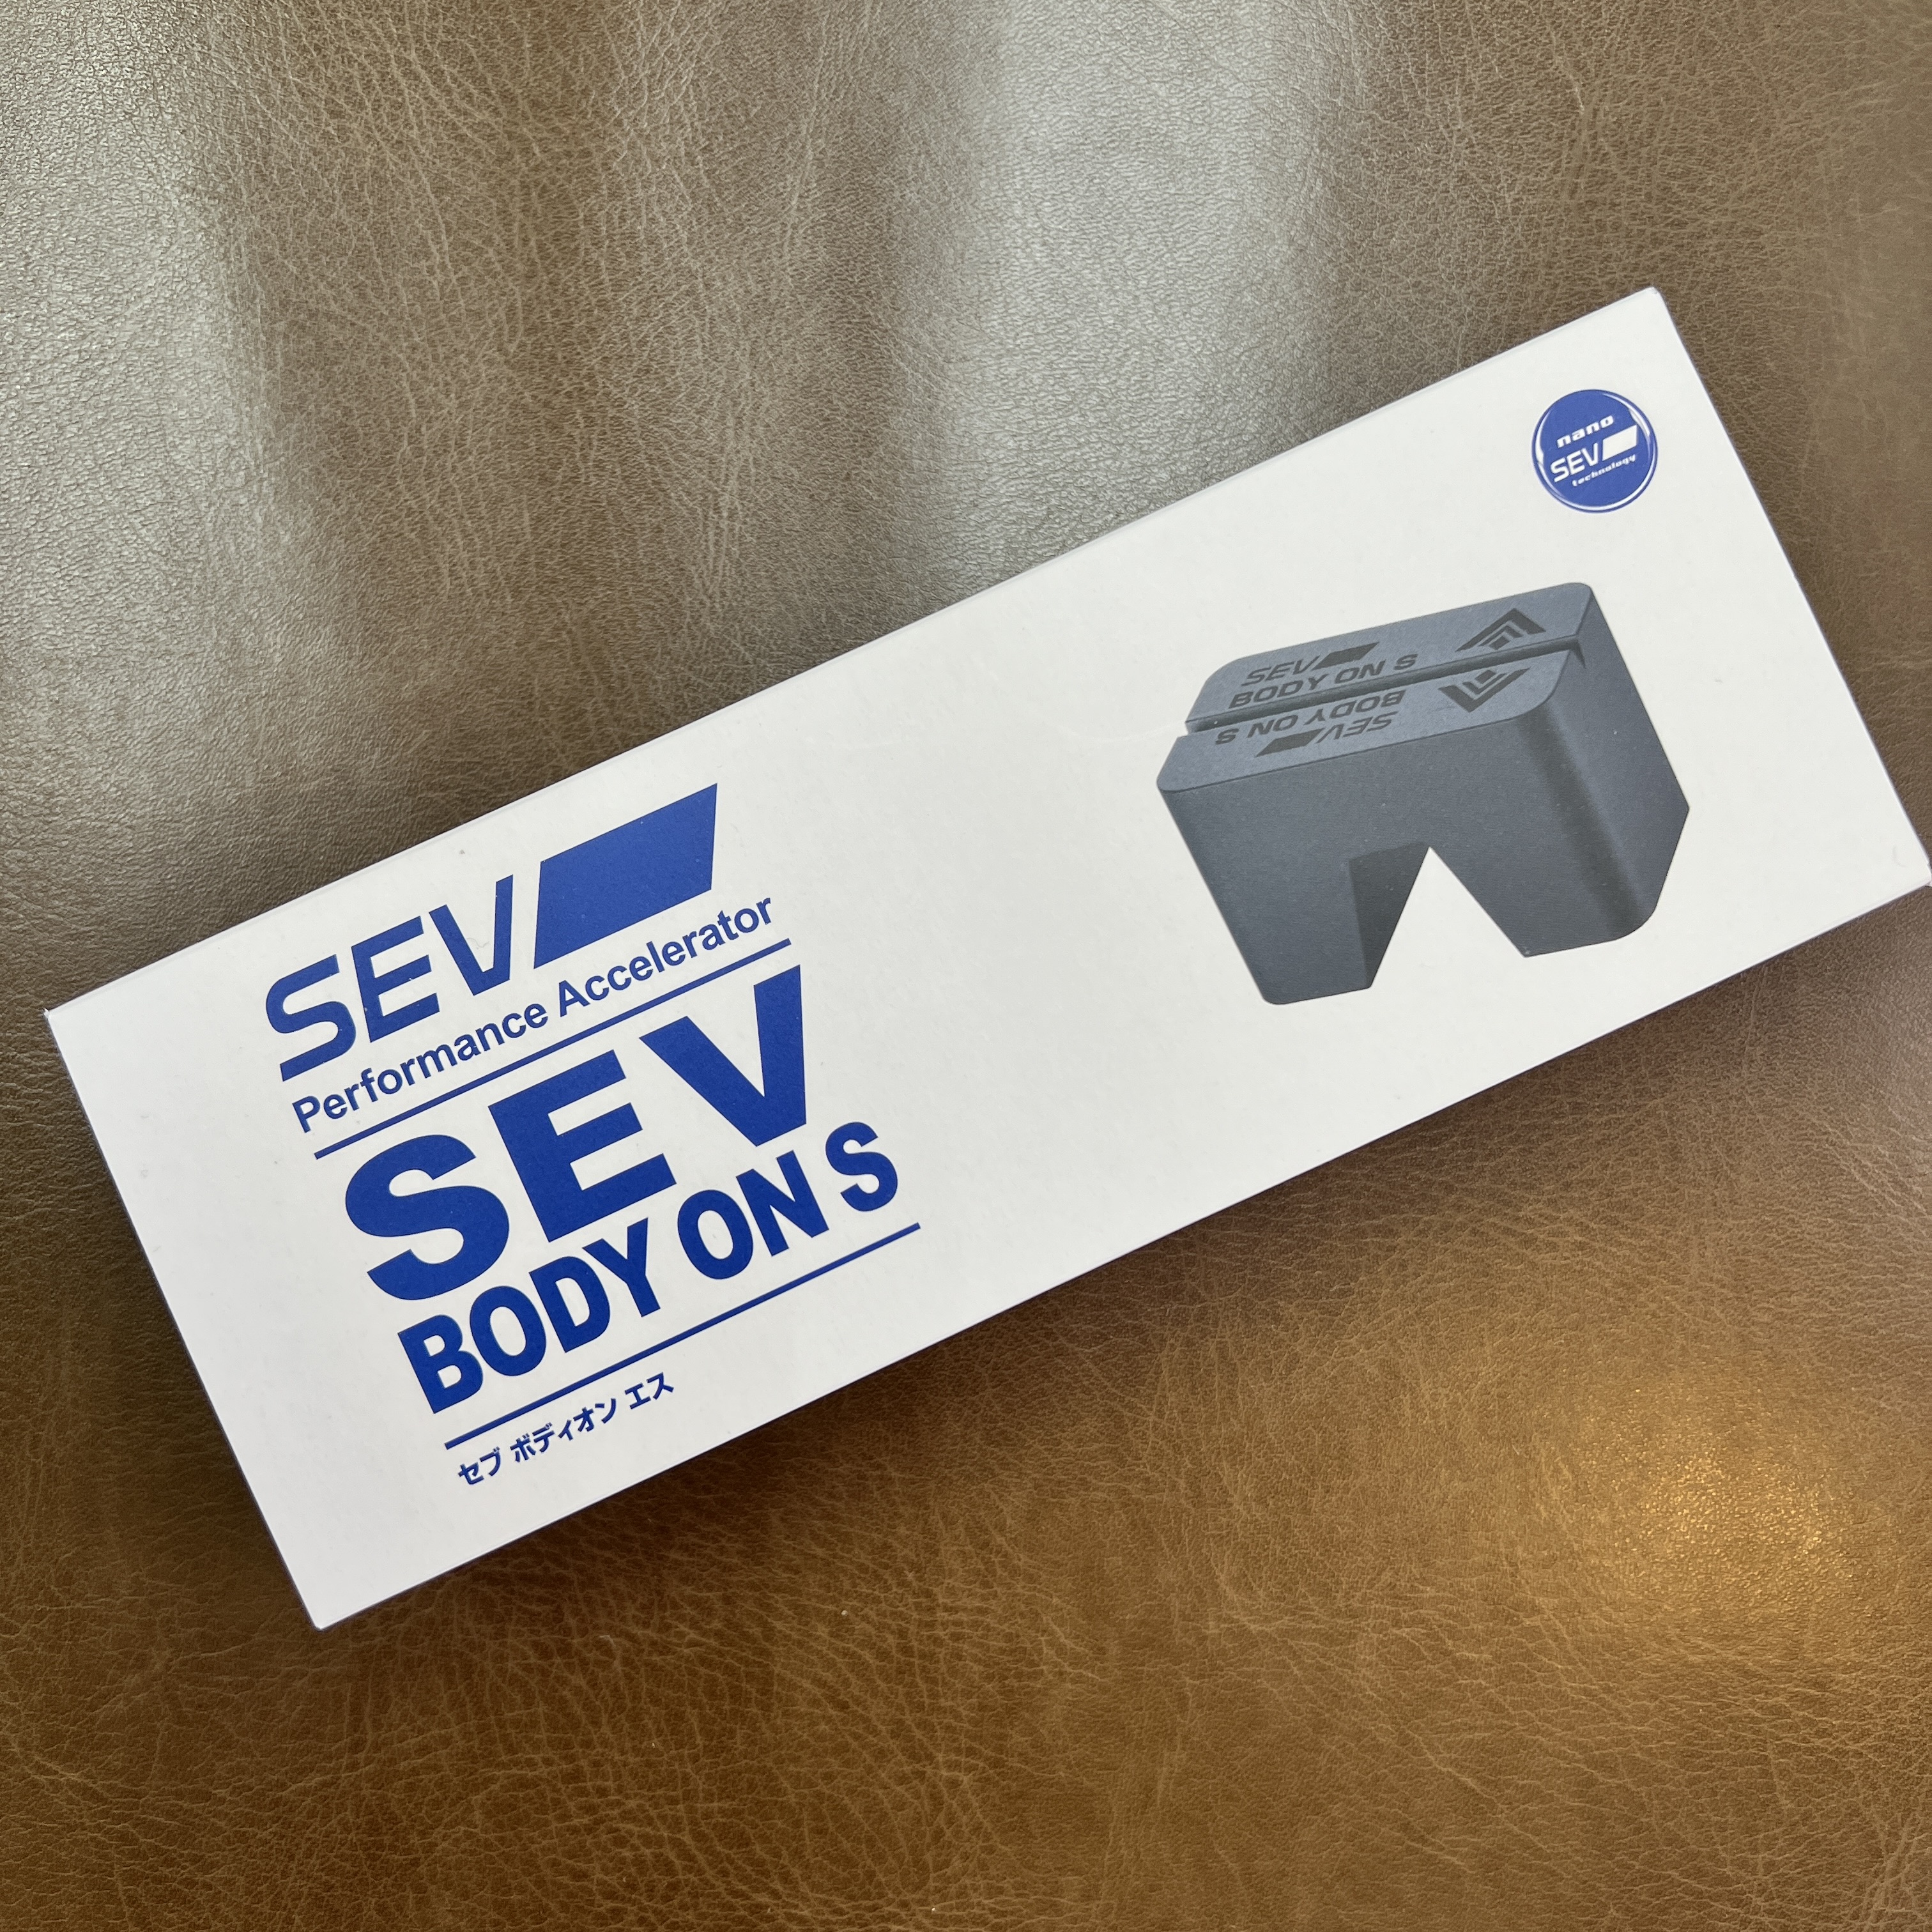 おまたせいたしました！SEV自動車用新商品 SEV ボディオン S 入荷しました。